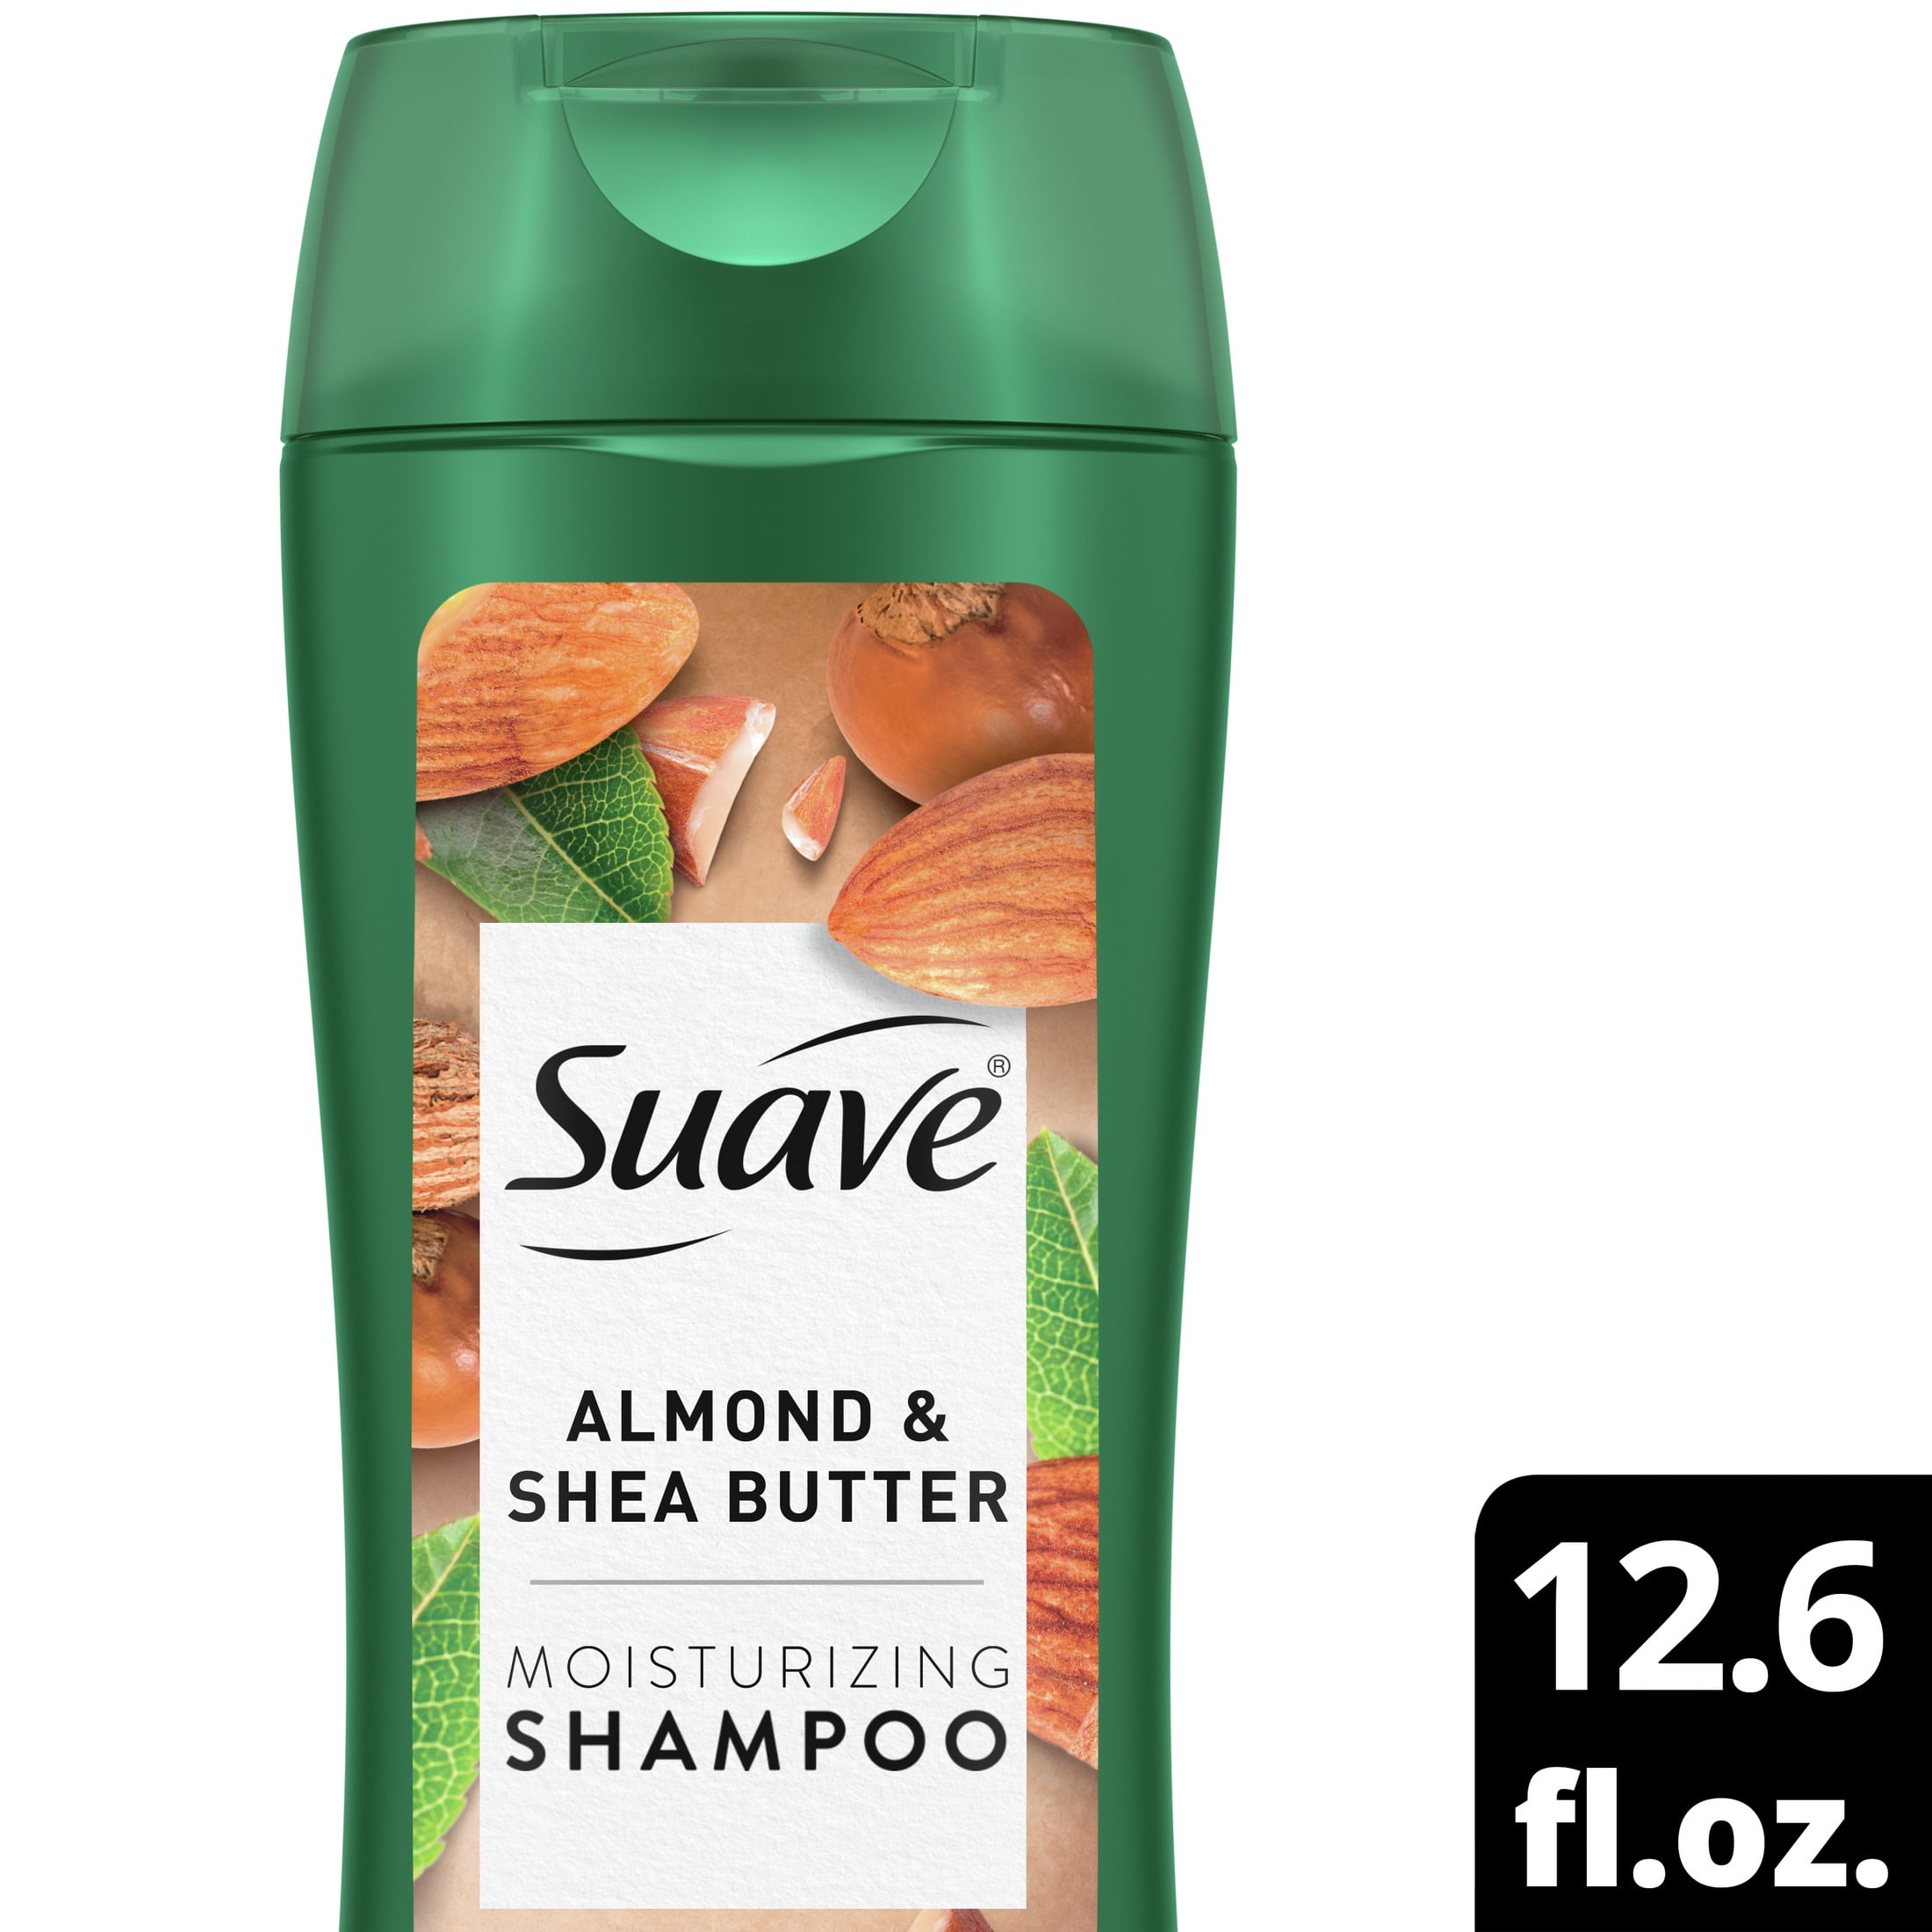 Suave Almond & Shea Butter Moisturizing Shampoo 12.6 fl oz